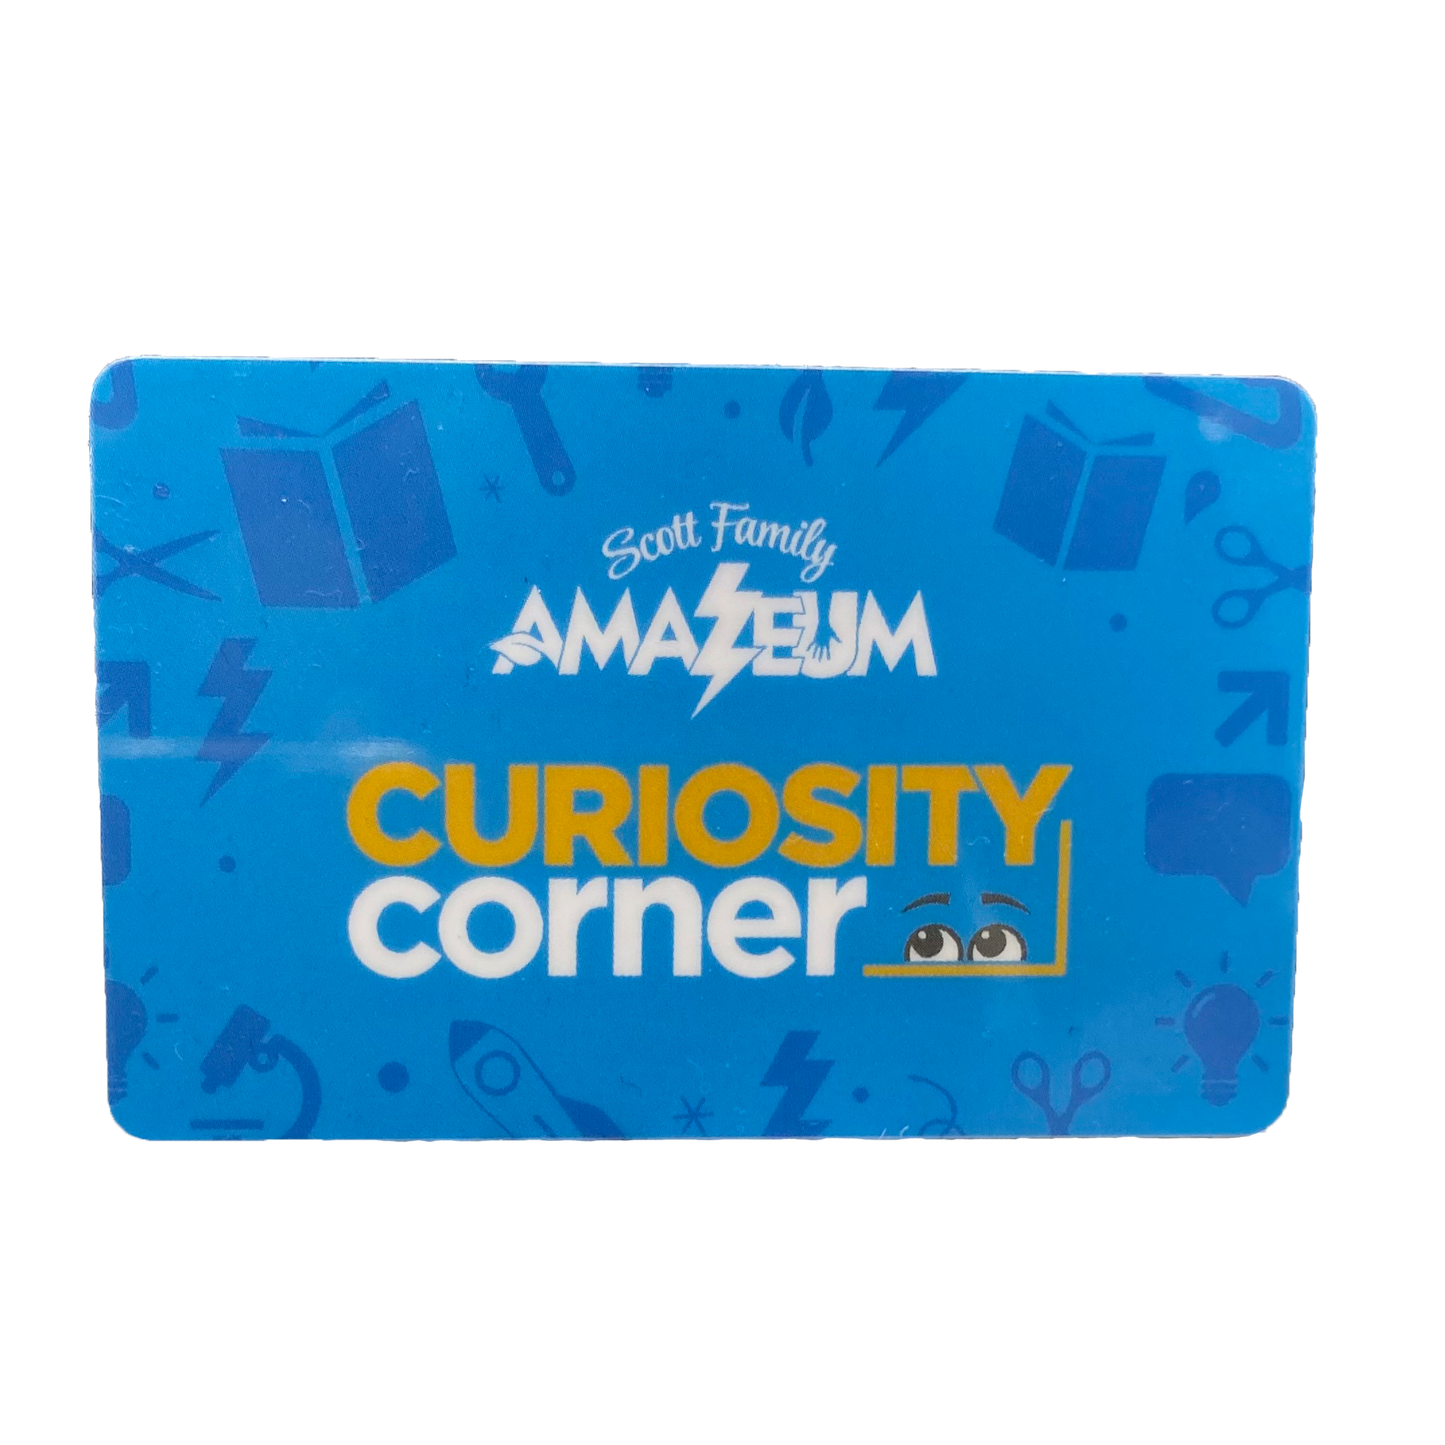 E-Gift Card for Curiosity Corner